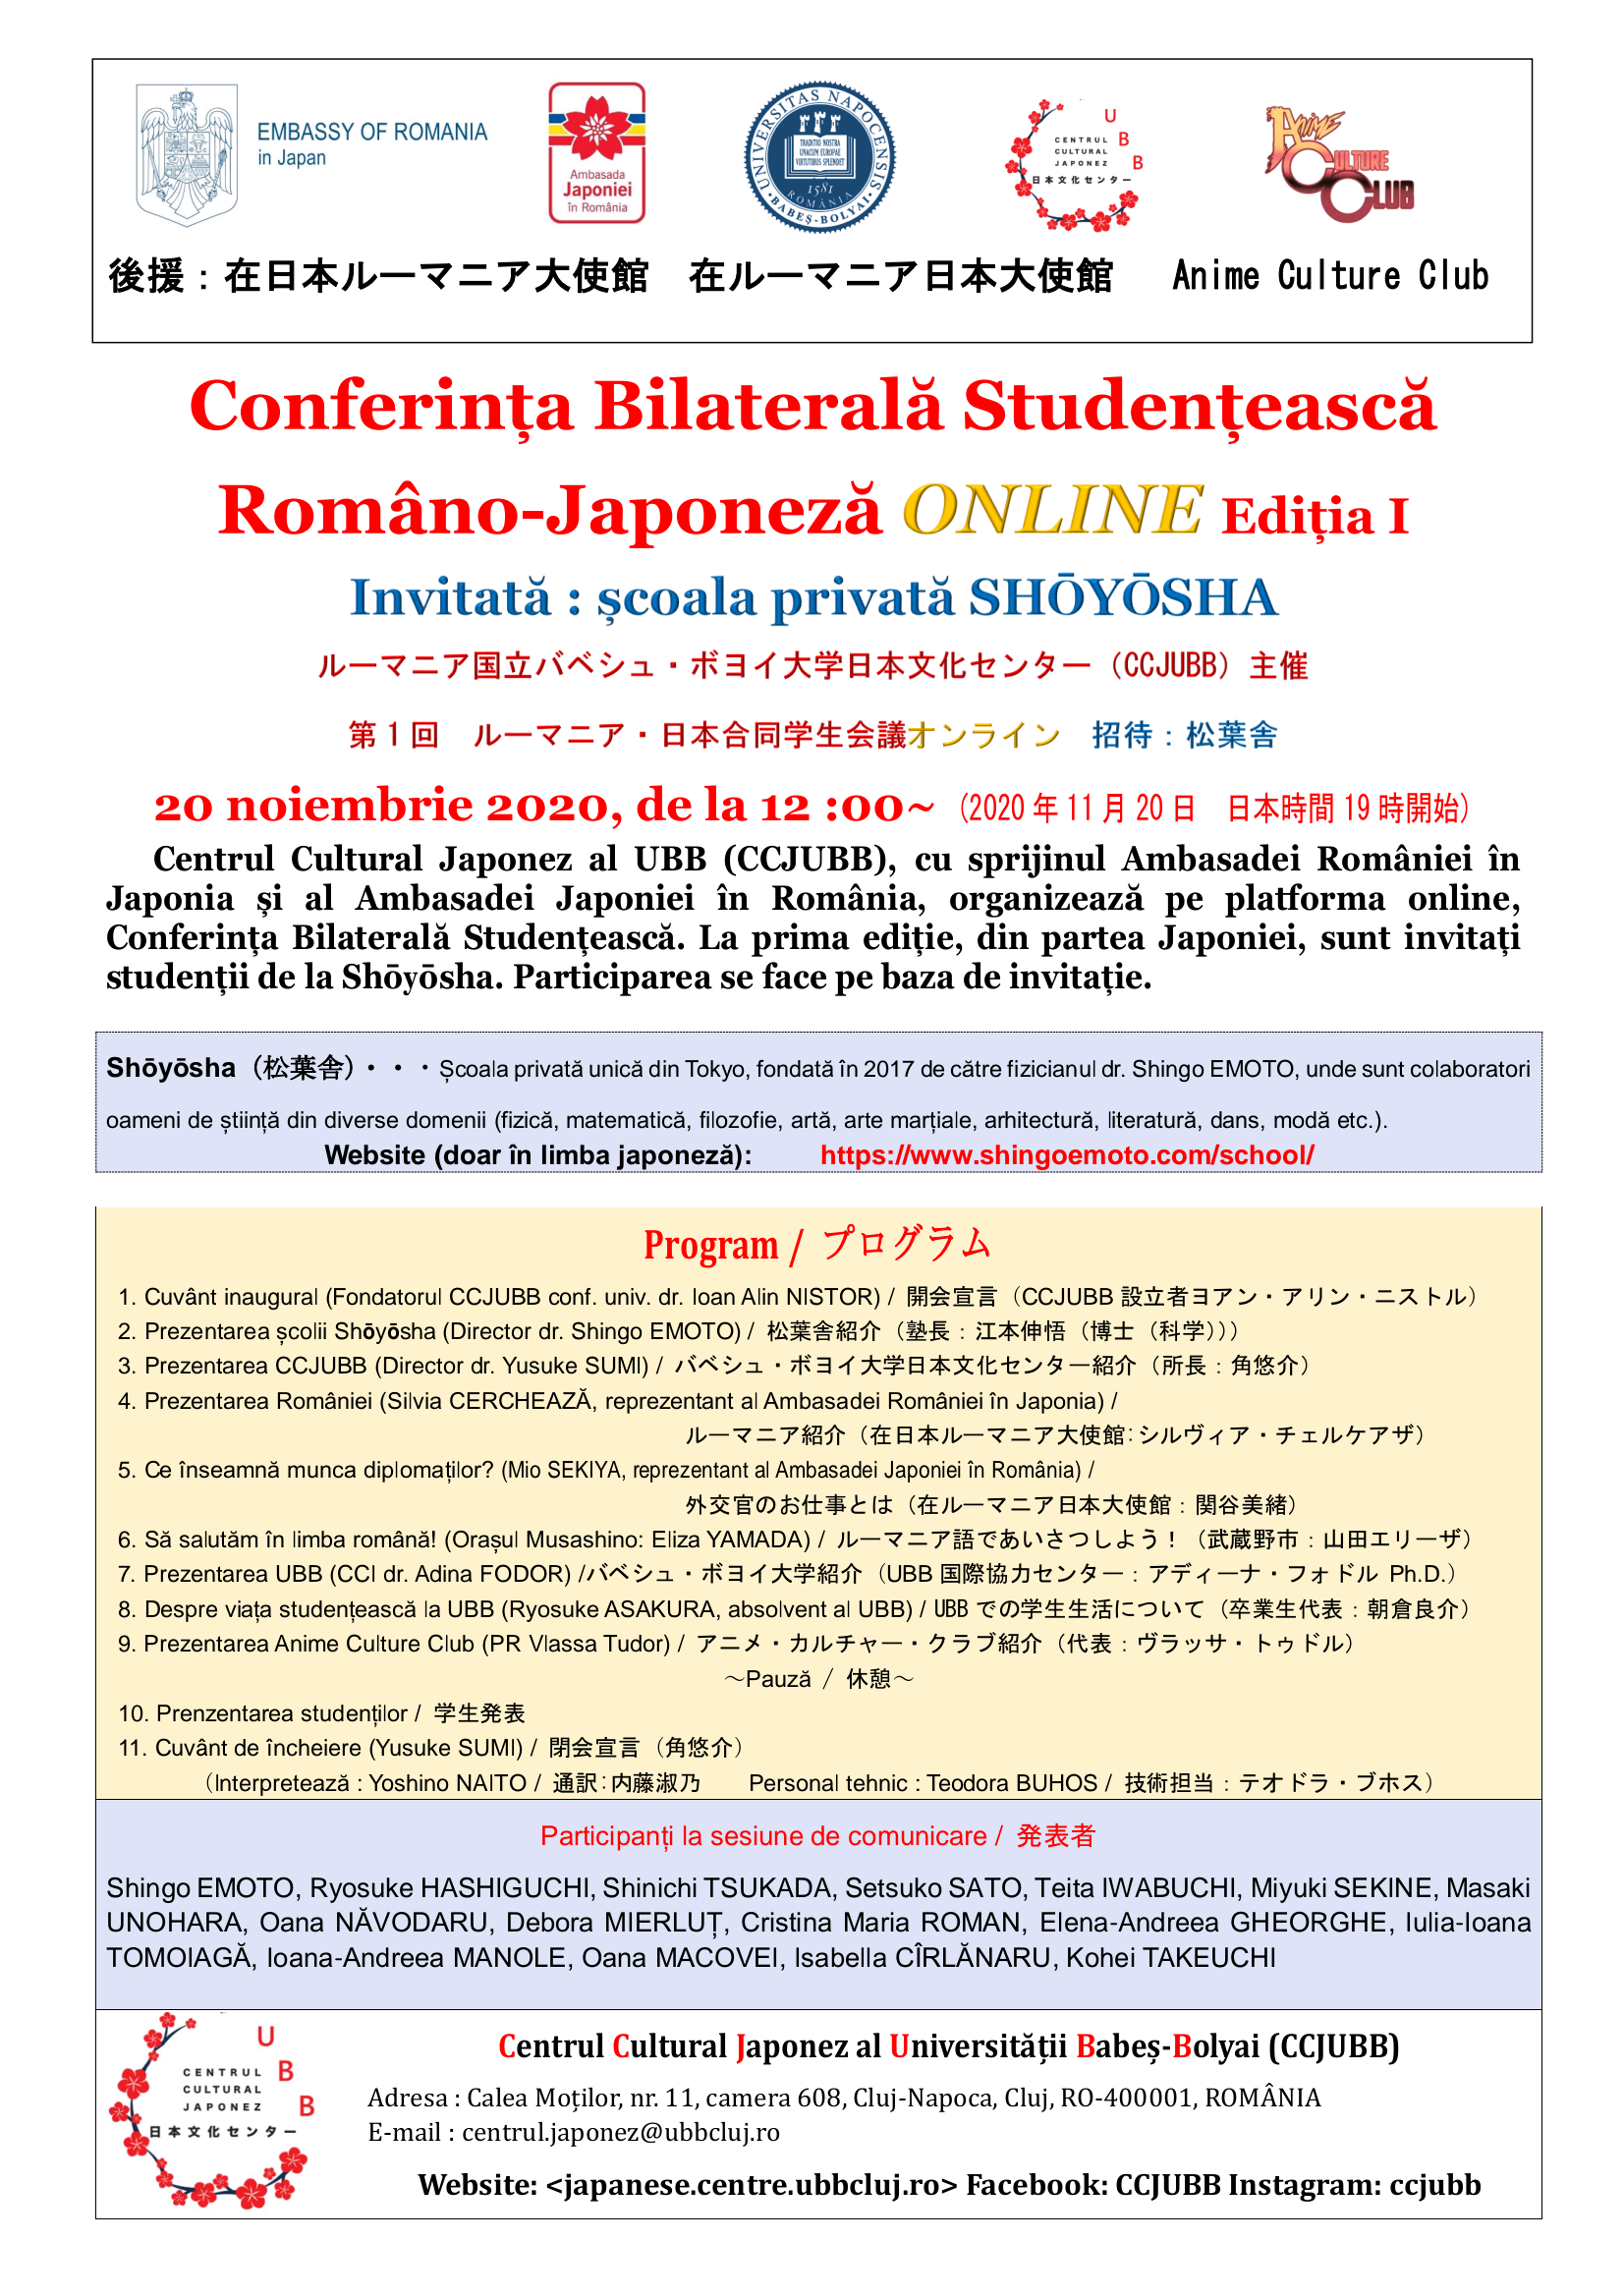 Conferința Bilaterală Romano-Japoneză online ed. I